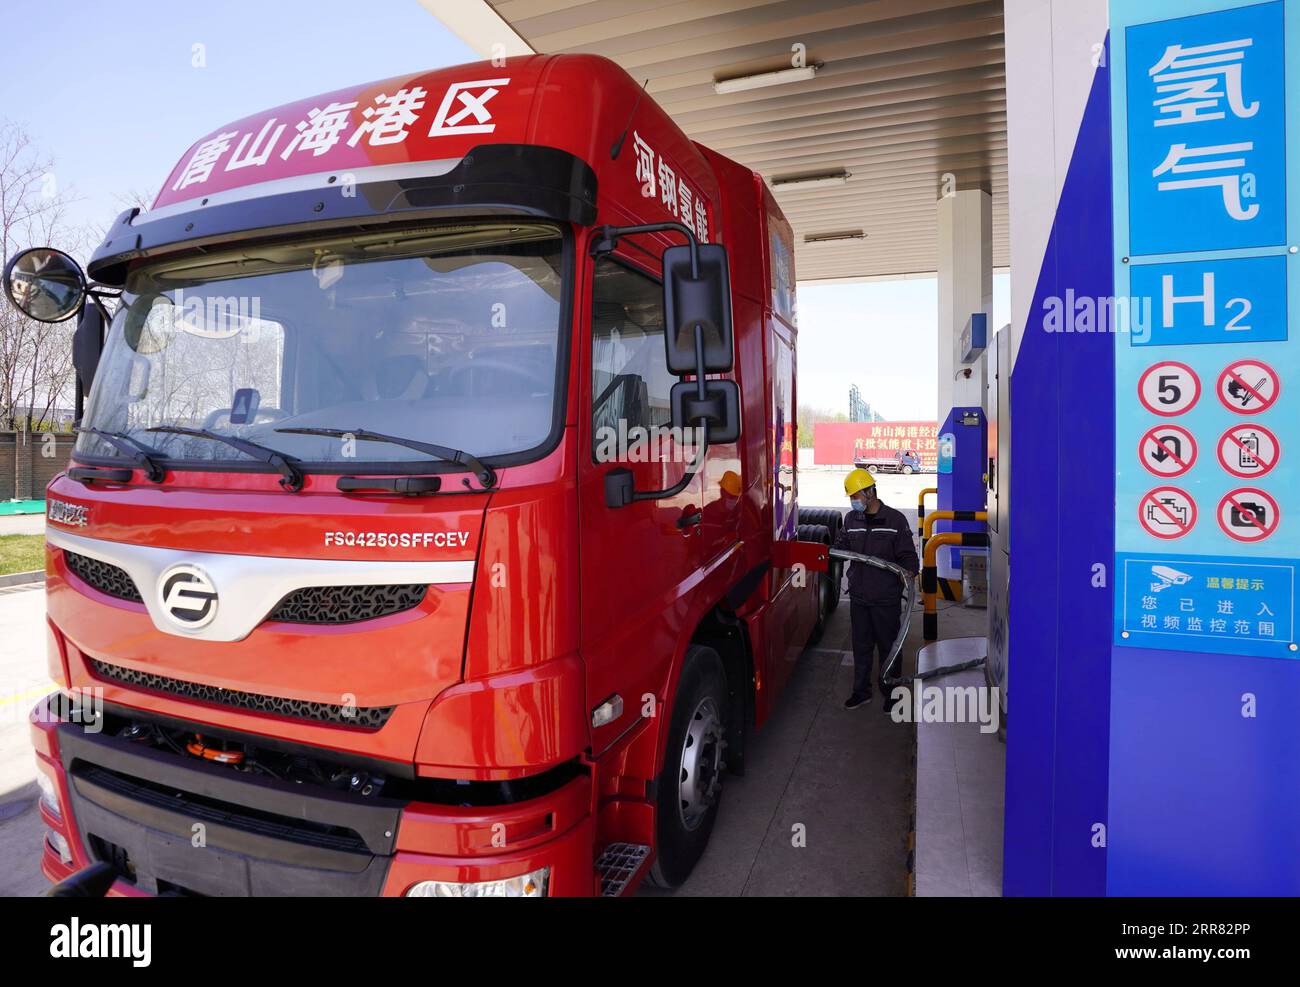 210414 -- TANGSHAN, 14 aprile 2021 -- Un lavoratore rifornisce un camion pesante alimentato a idrogeno in una stazione a idrogeno nella zona di sviluppo economico di Tangshan Haigang a Tangshan, provincia di Hebei, 14 aprile 2021. Mercoledì sono stati introdotti cinque camion pesanti alimentati a idrogeno dalla zona di sviluppo economico di Tangshan Haigang. La flotta di veicoli industriali è tra i primi tentativi della zona di ottimizzare la struttura industriale e il consumo energetico sostituendo gradualmente il carburante diesel con le celle di alimentazione a idrogeno più ecologiche. CHINA-HEBEI-TANGSHAN-AUTOCARRI ALIMENTATI A IDROGENO CN YANG Foto Stock